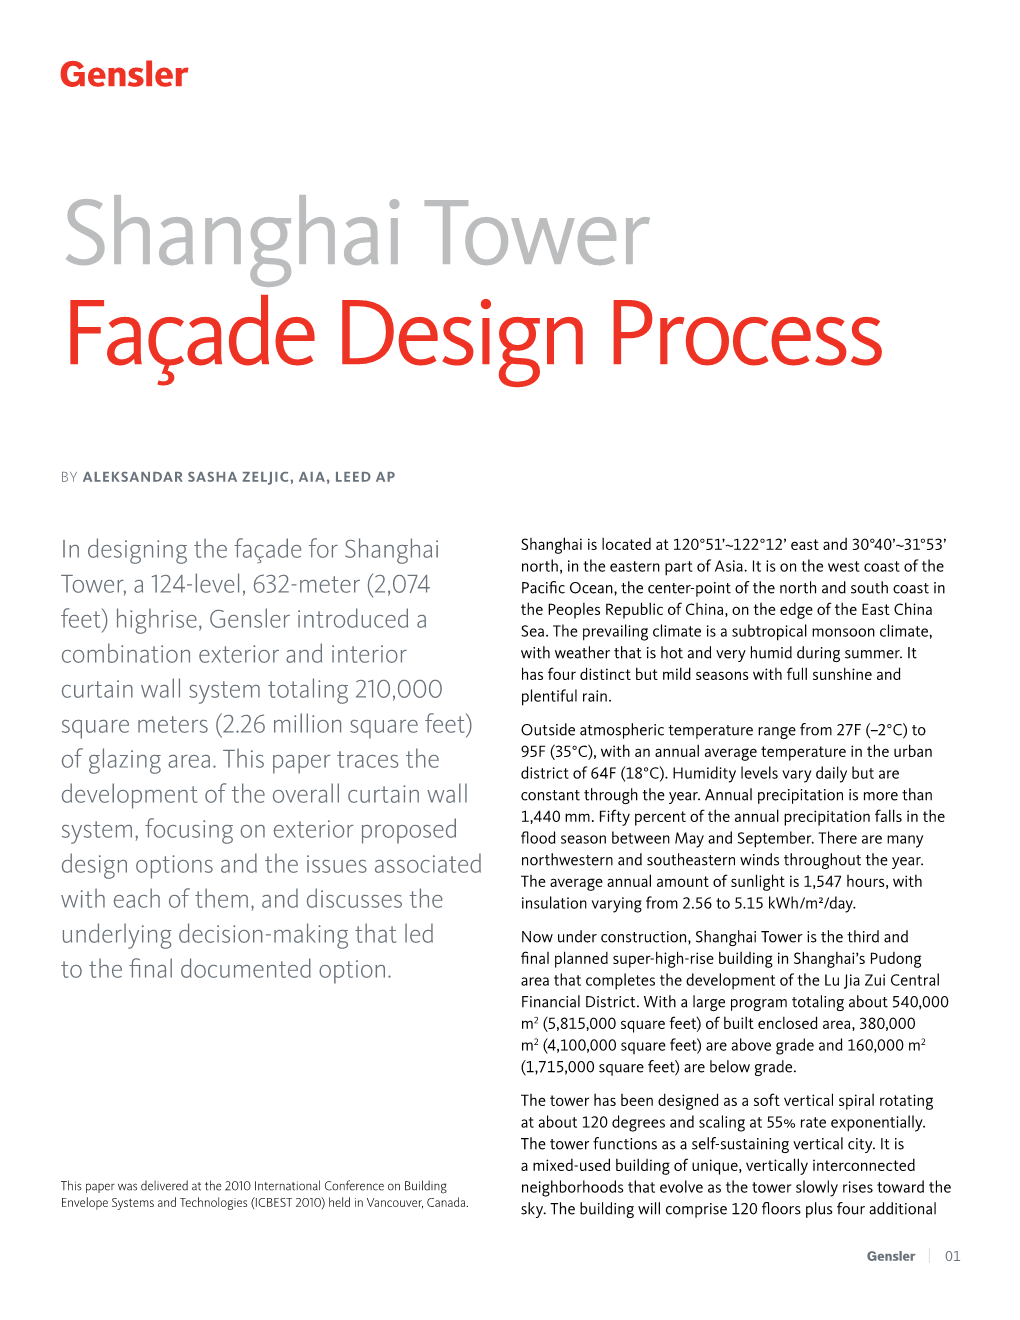 Shanghai Tower Façade Design Process